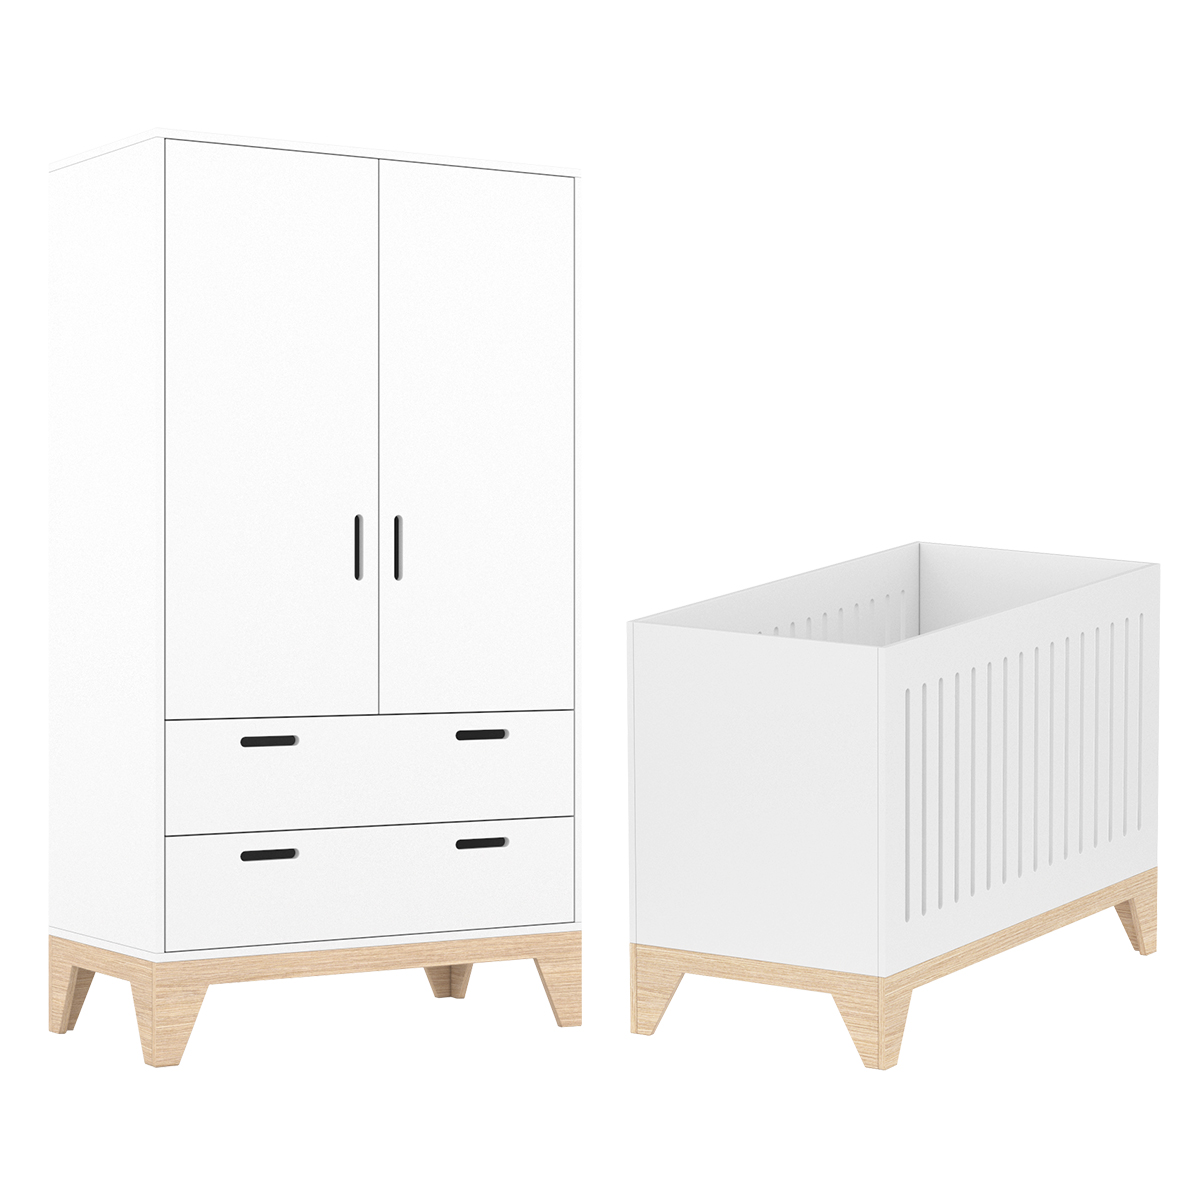 Chambre bébé : Duo - Lit évolutif 60x120 armoire blanc naturel